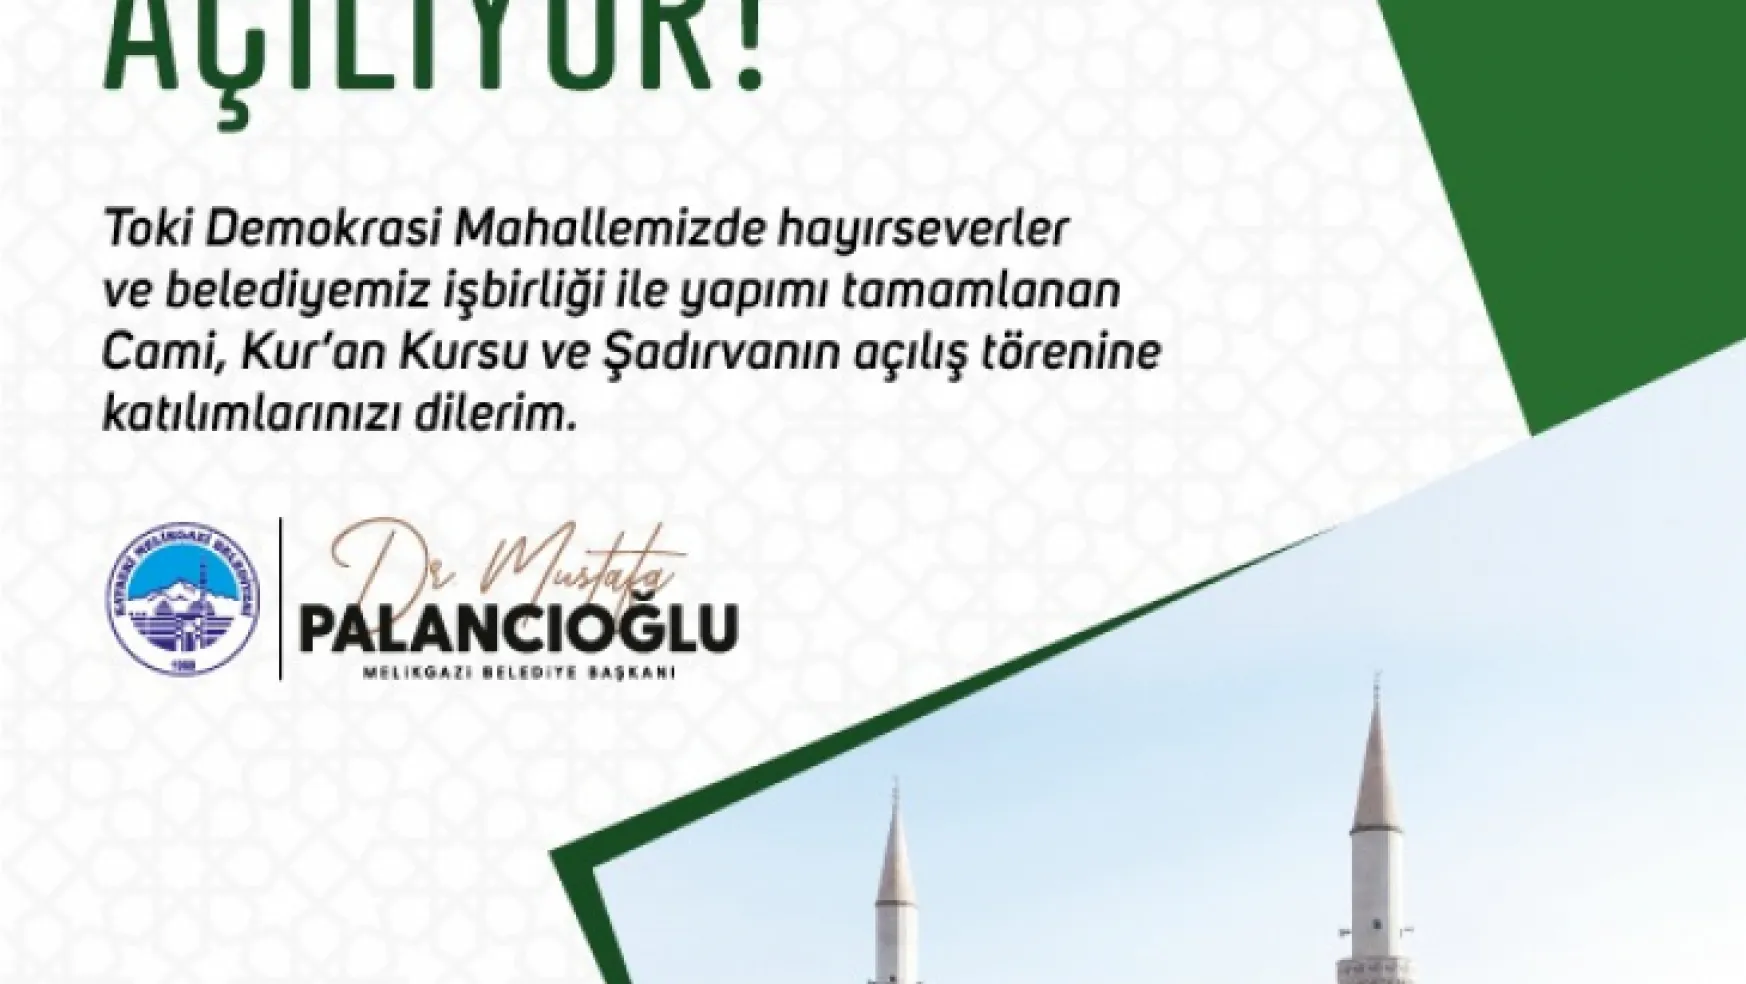 Melikgazi'den Cami açılışı ve 'Taşların İzinde Kayseri' kitap söyleşi programı